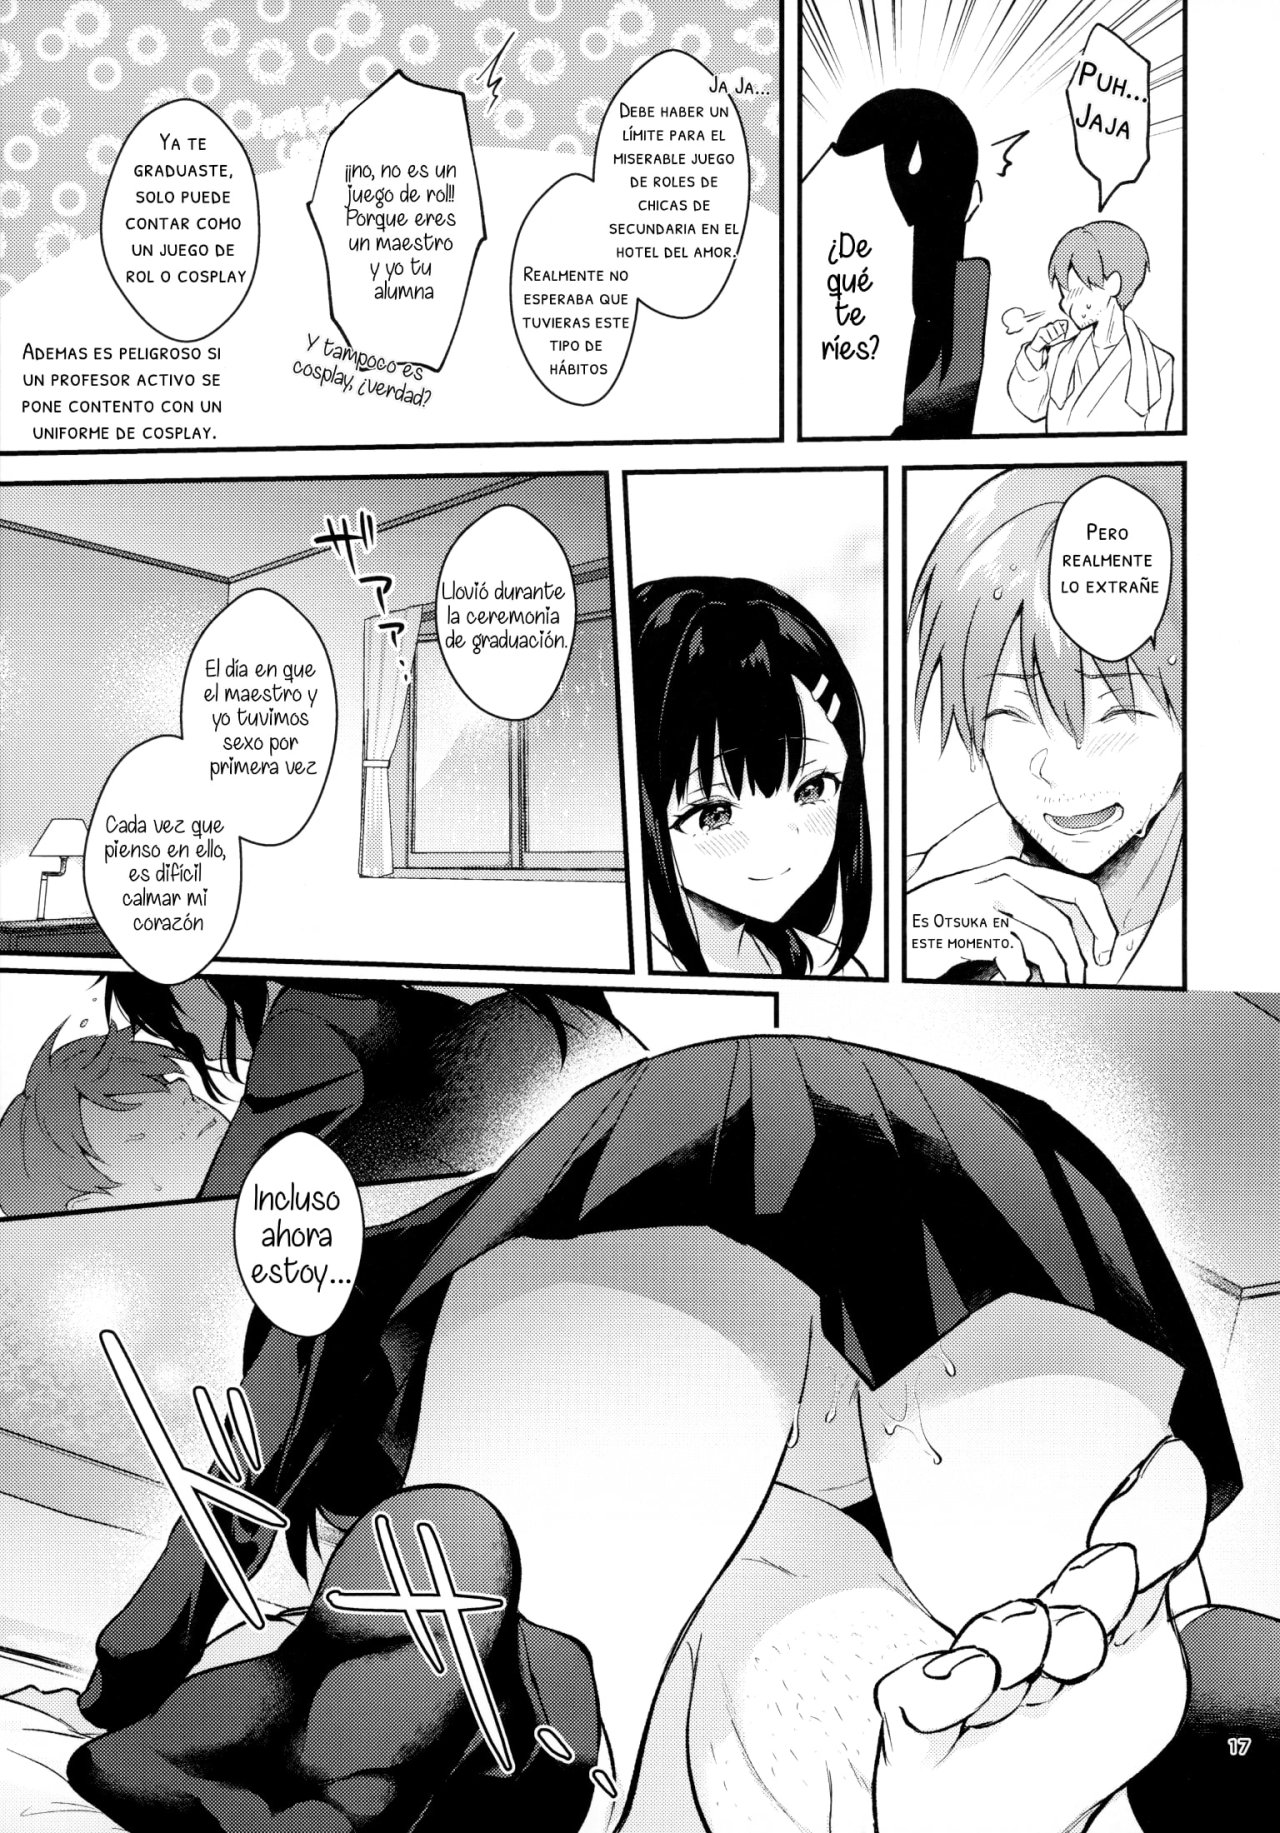 Sunshower-JK Miyako no Valentine Manga 3 - 15